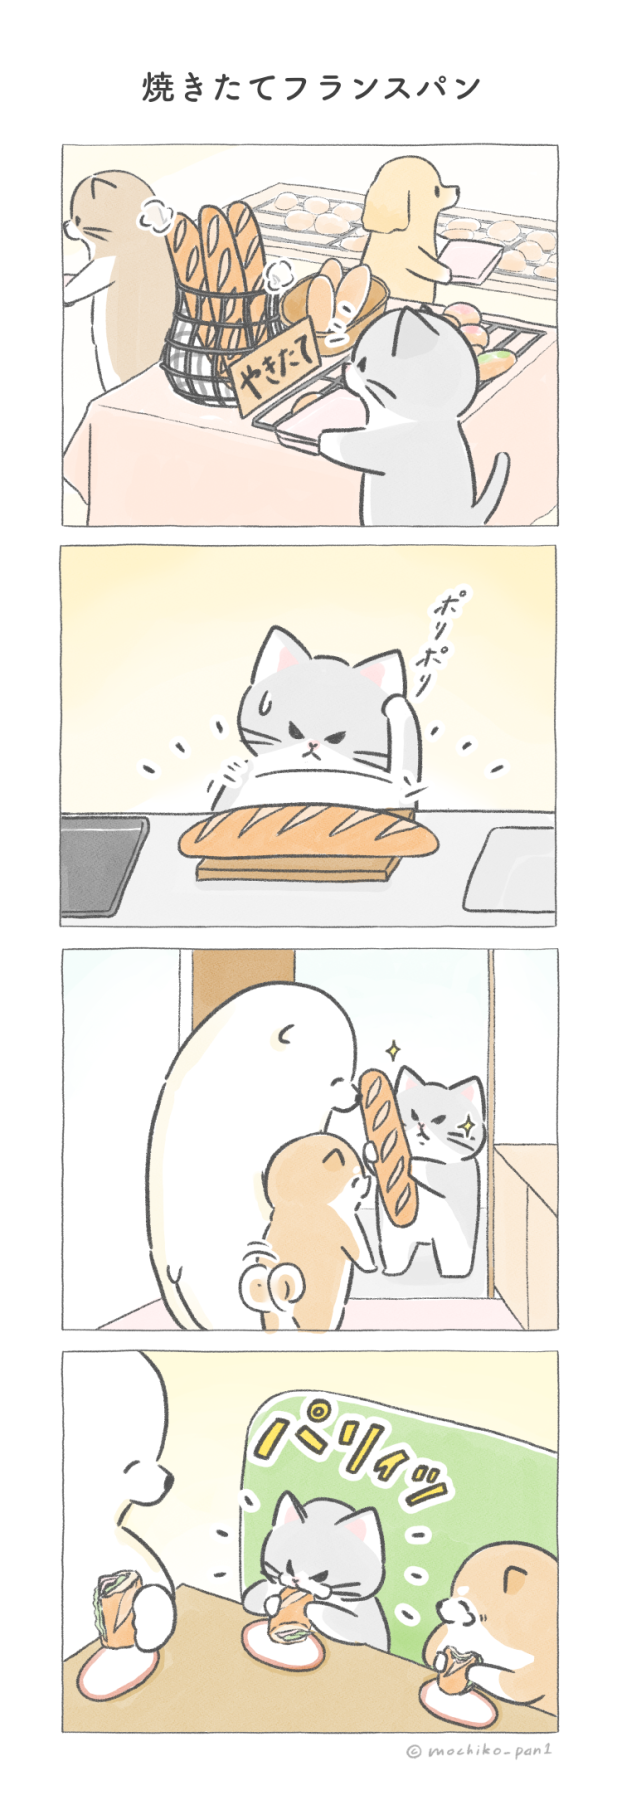 【四コマ漫画】vol.91「焼きたてフランスパン」｜おはよう！おしばと愉快な仲間たち